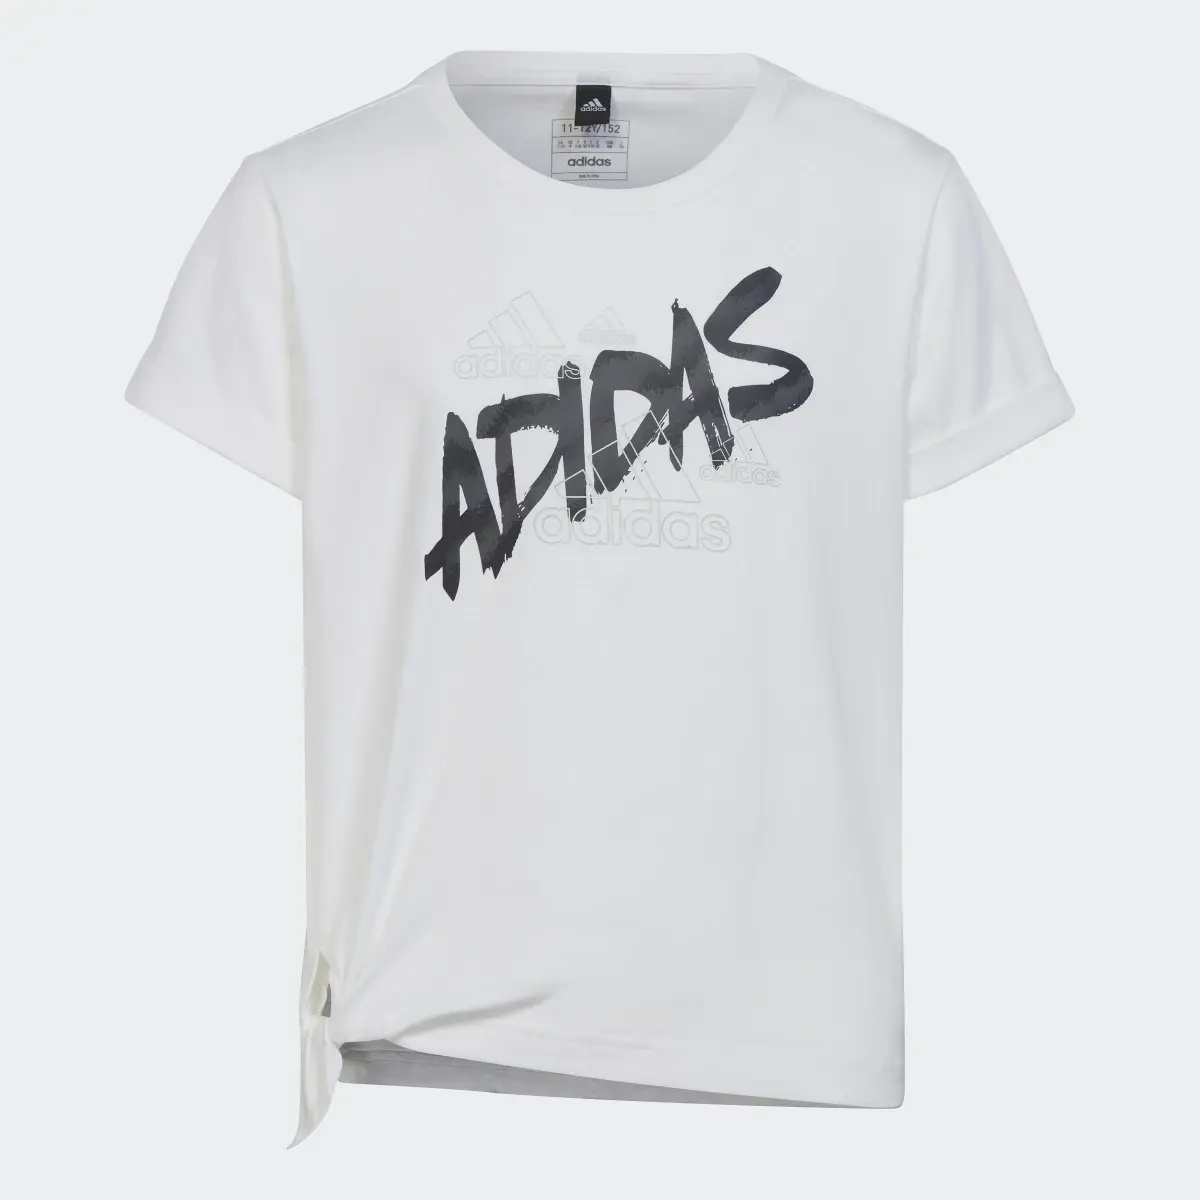 Adidas T-shirt Dance. 1